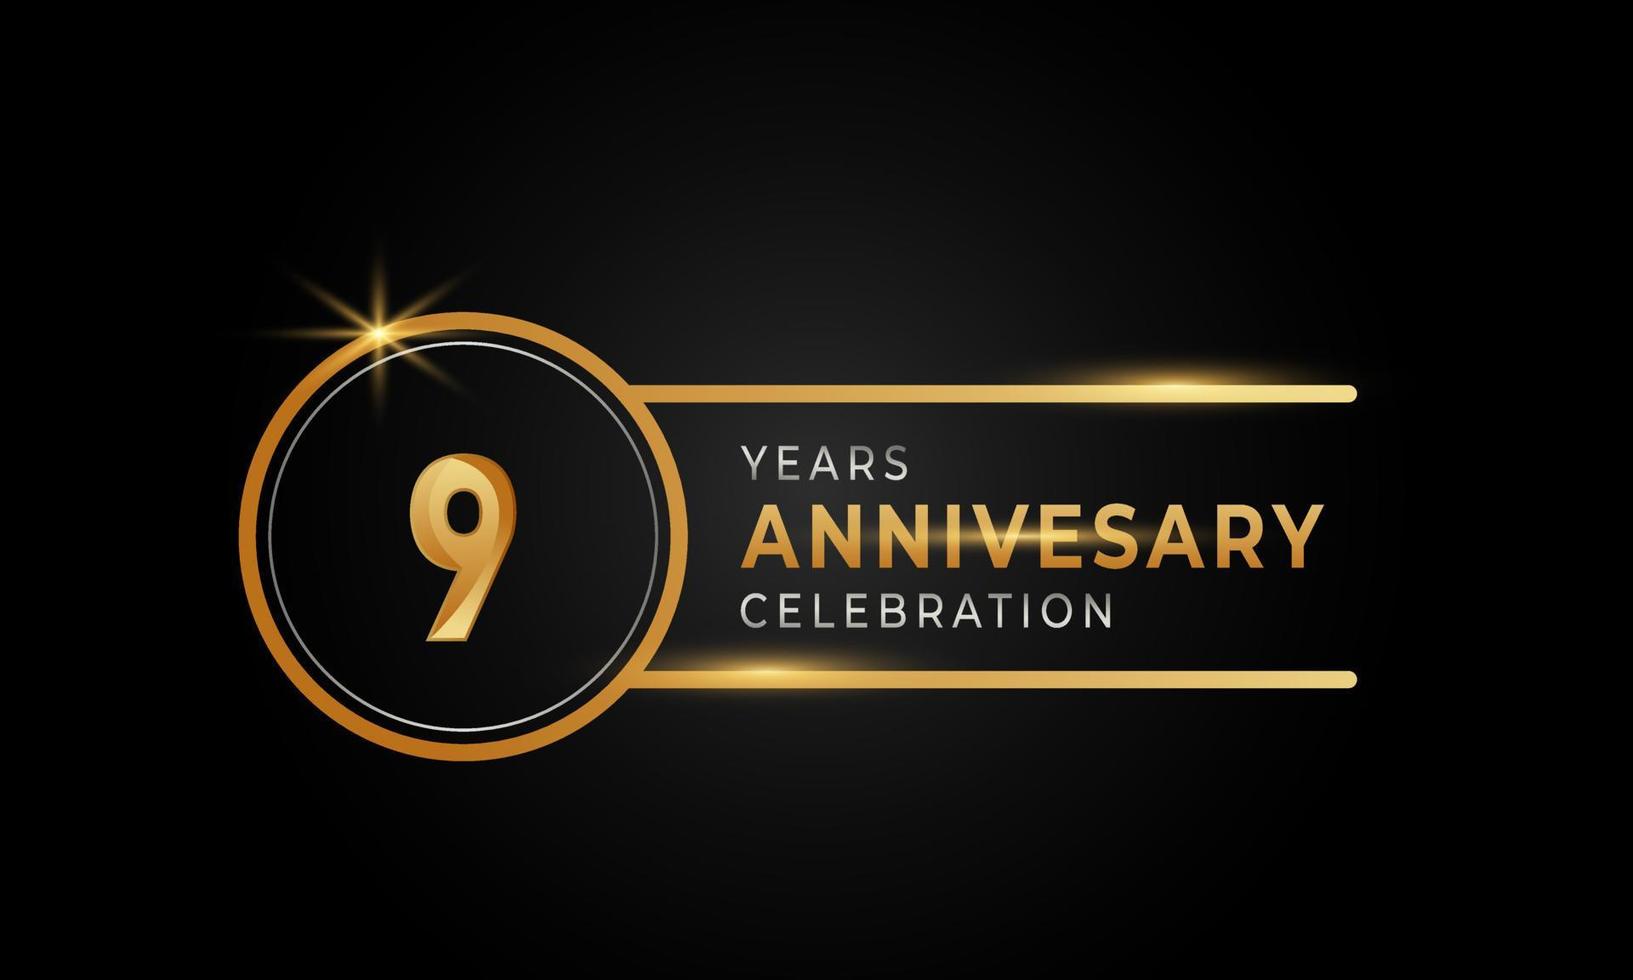 Celebración del aniversario de 9 años color dorado y plateado con anillo circular para evento de celebración, boda, tarjeta de felicitación e invitación aislada en fondo negro vector